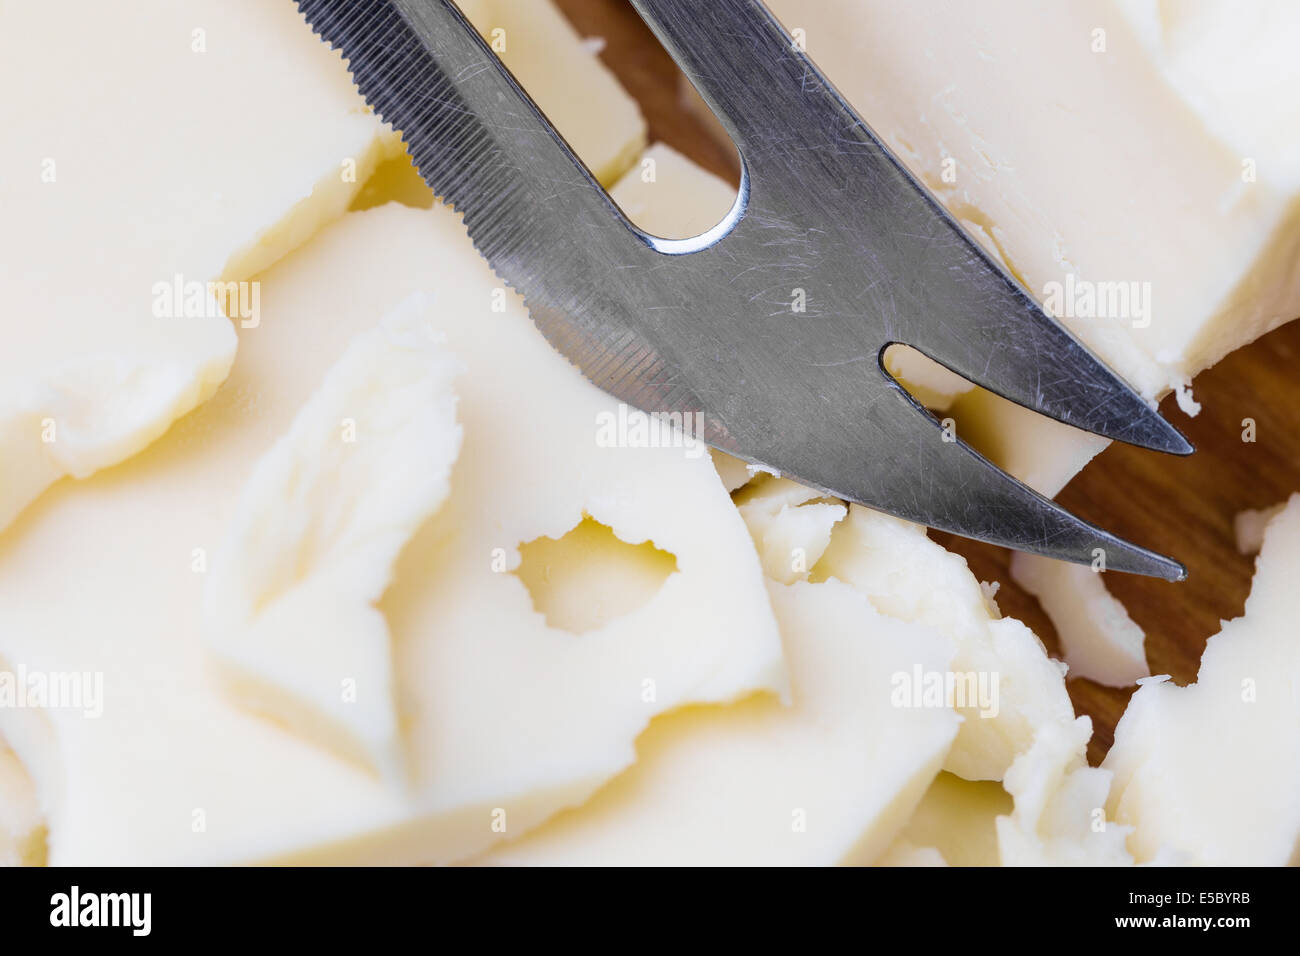 Tranches de fromage blanc maasdam avec couteau sur sol en bois Banque D'Images